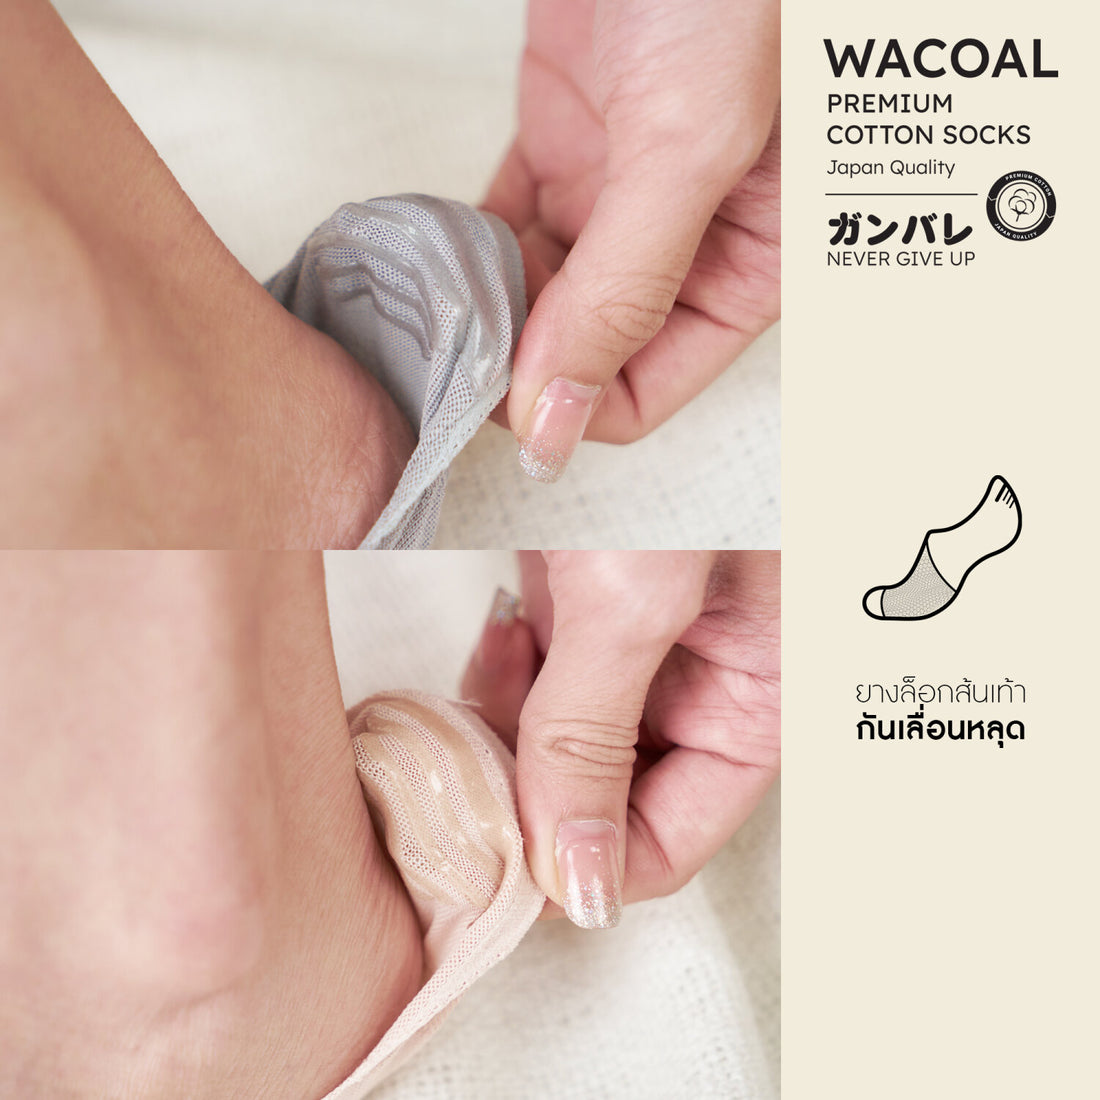 ถุงเท้าซ่อนข้อ ถุงเท้าข้อเว้า Premium Cotton Socks Selected by Wacoal รุ่น WW110400 สีดำ (BL)